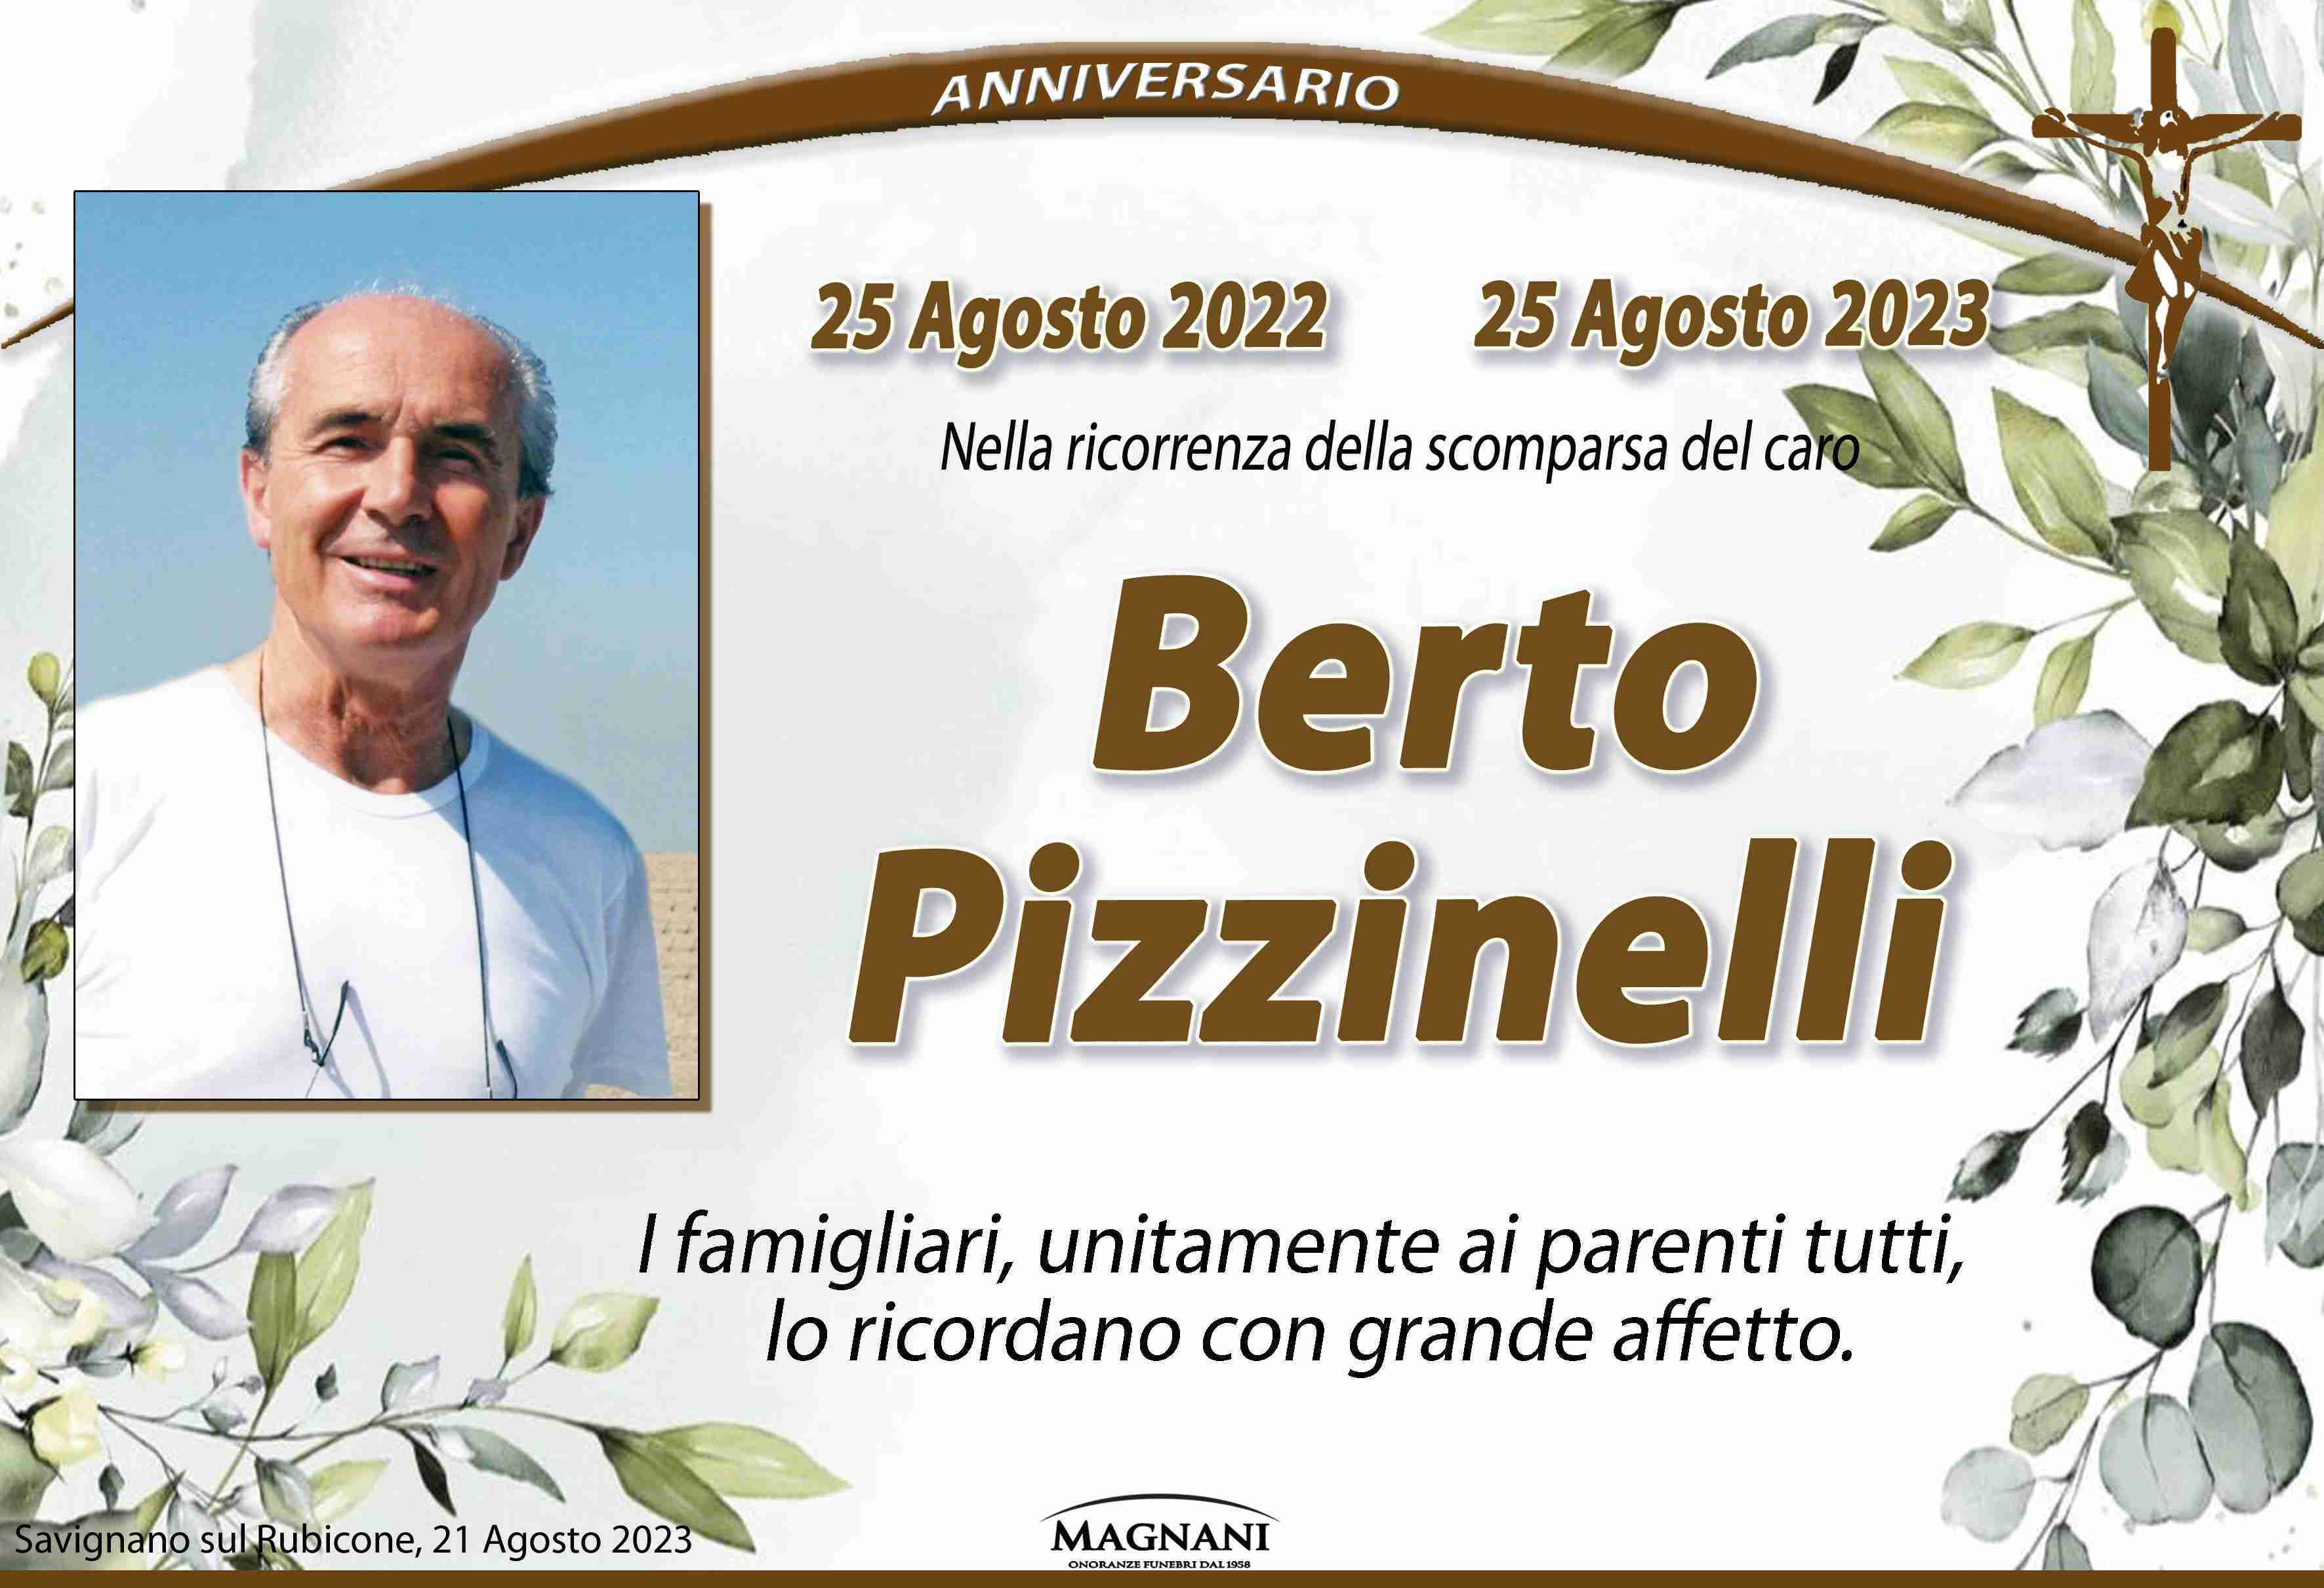 Alberto Pizzinelli